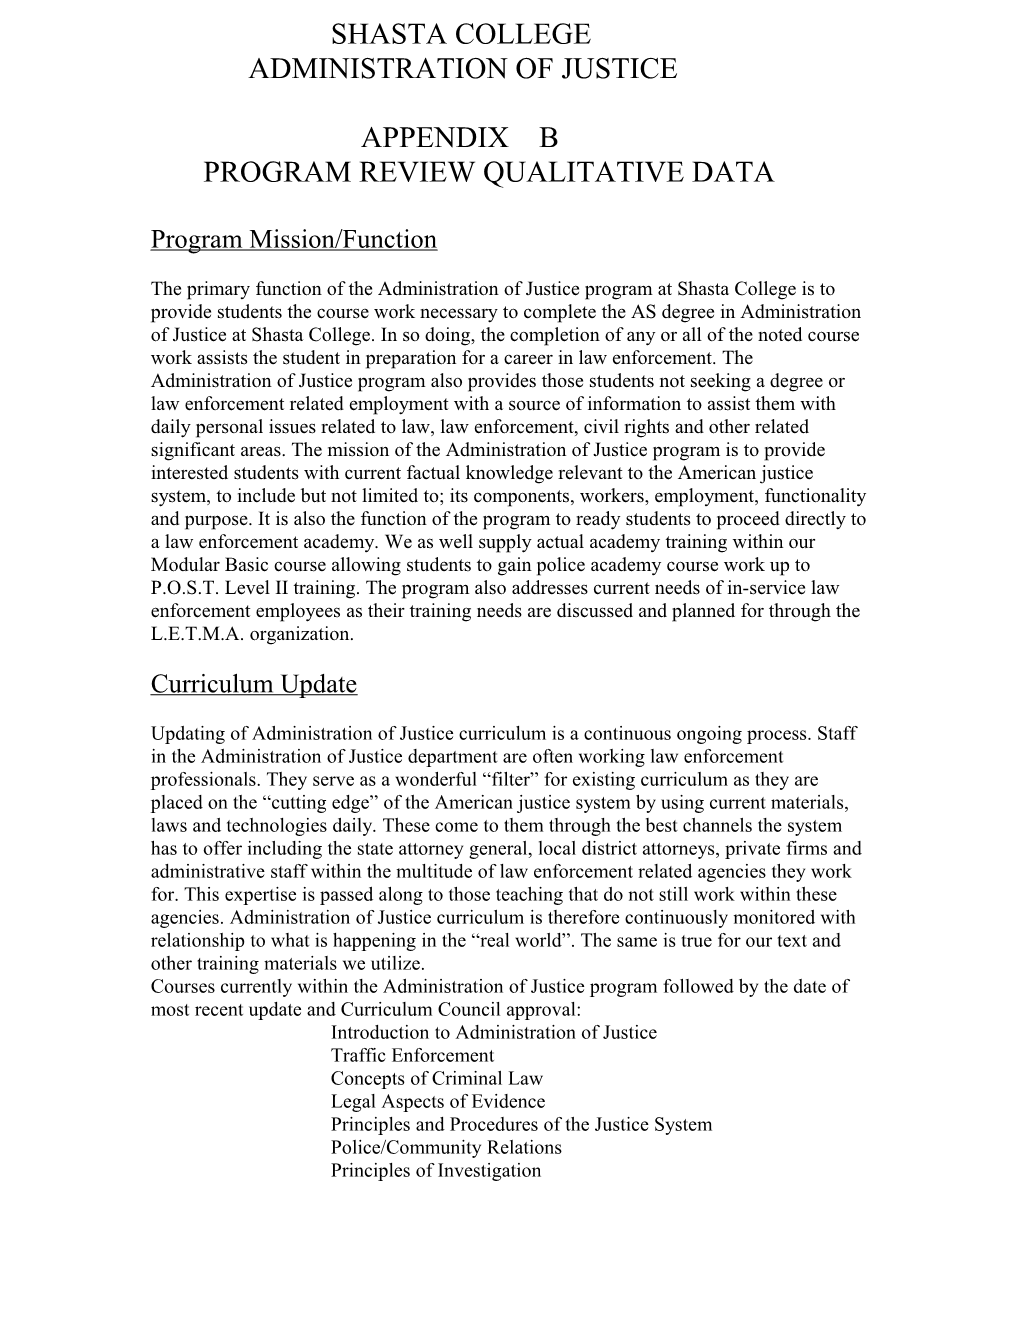 Program Review Qualitative Data